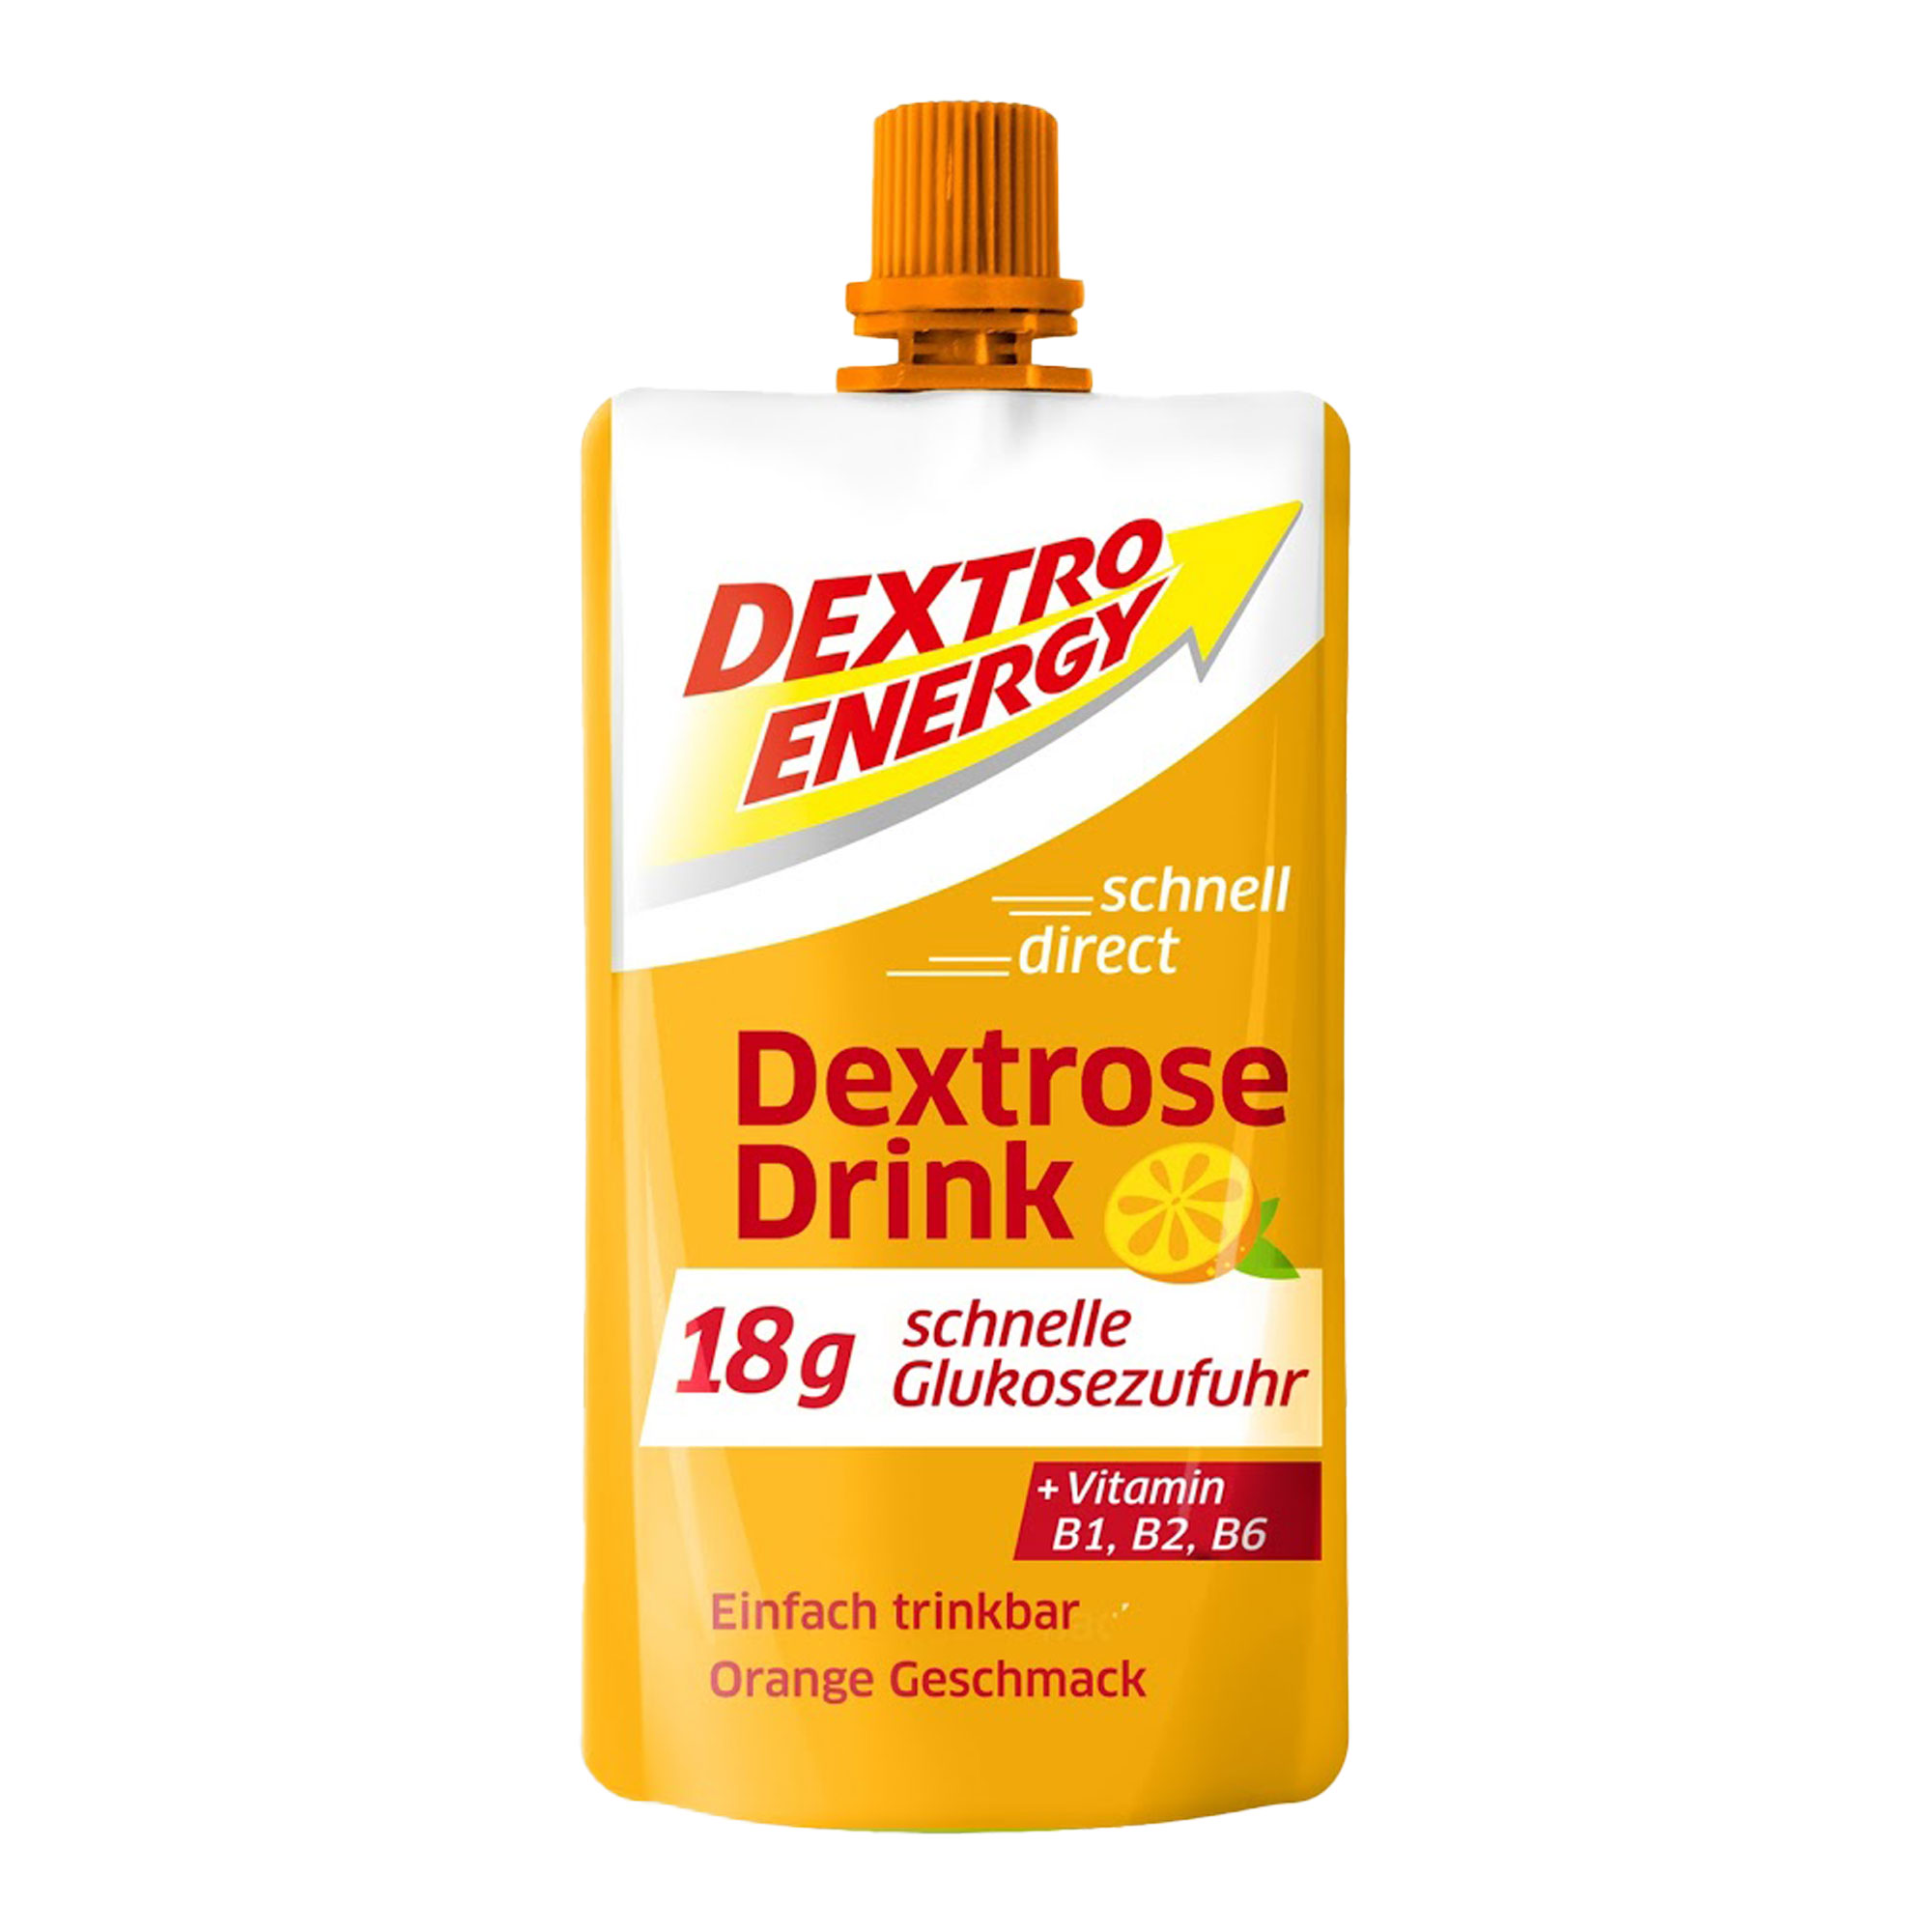 Die flüssige Alternative zu Dextrose-Täfelchen. Mit fruchtigem Orangen-Geschmack.